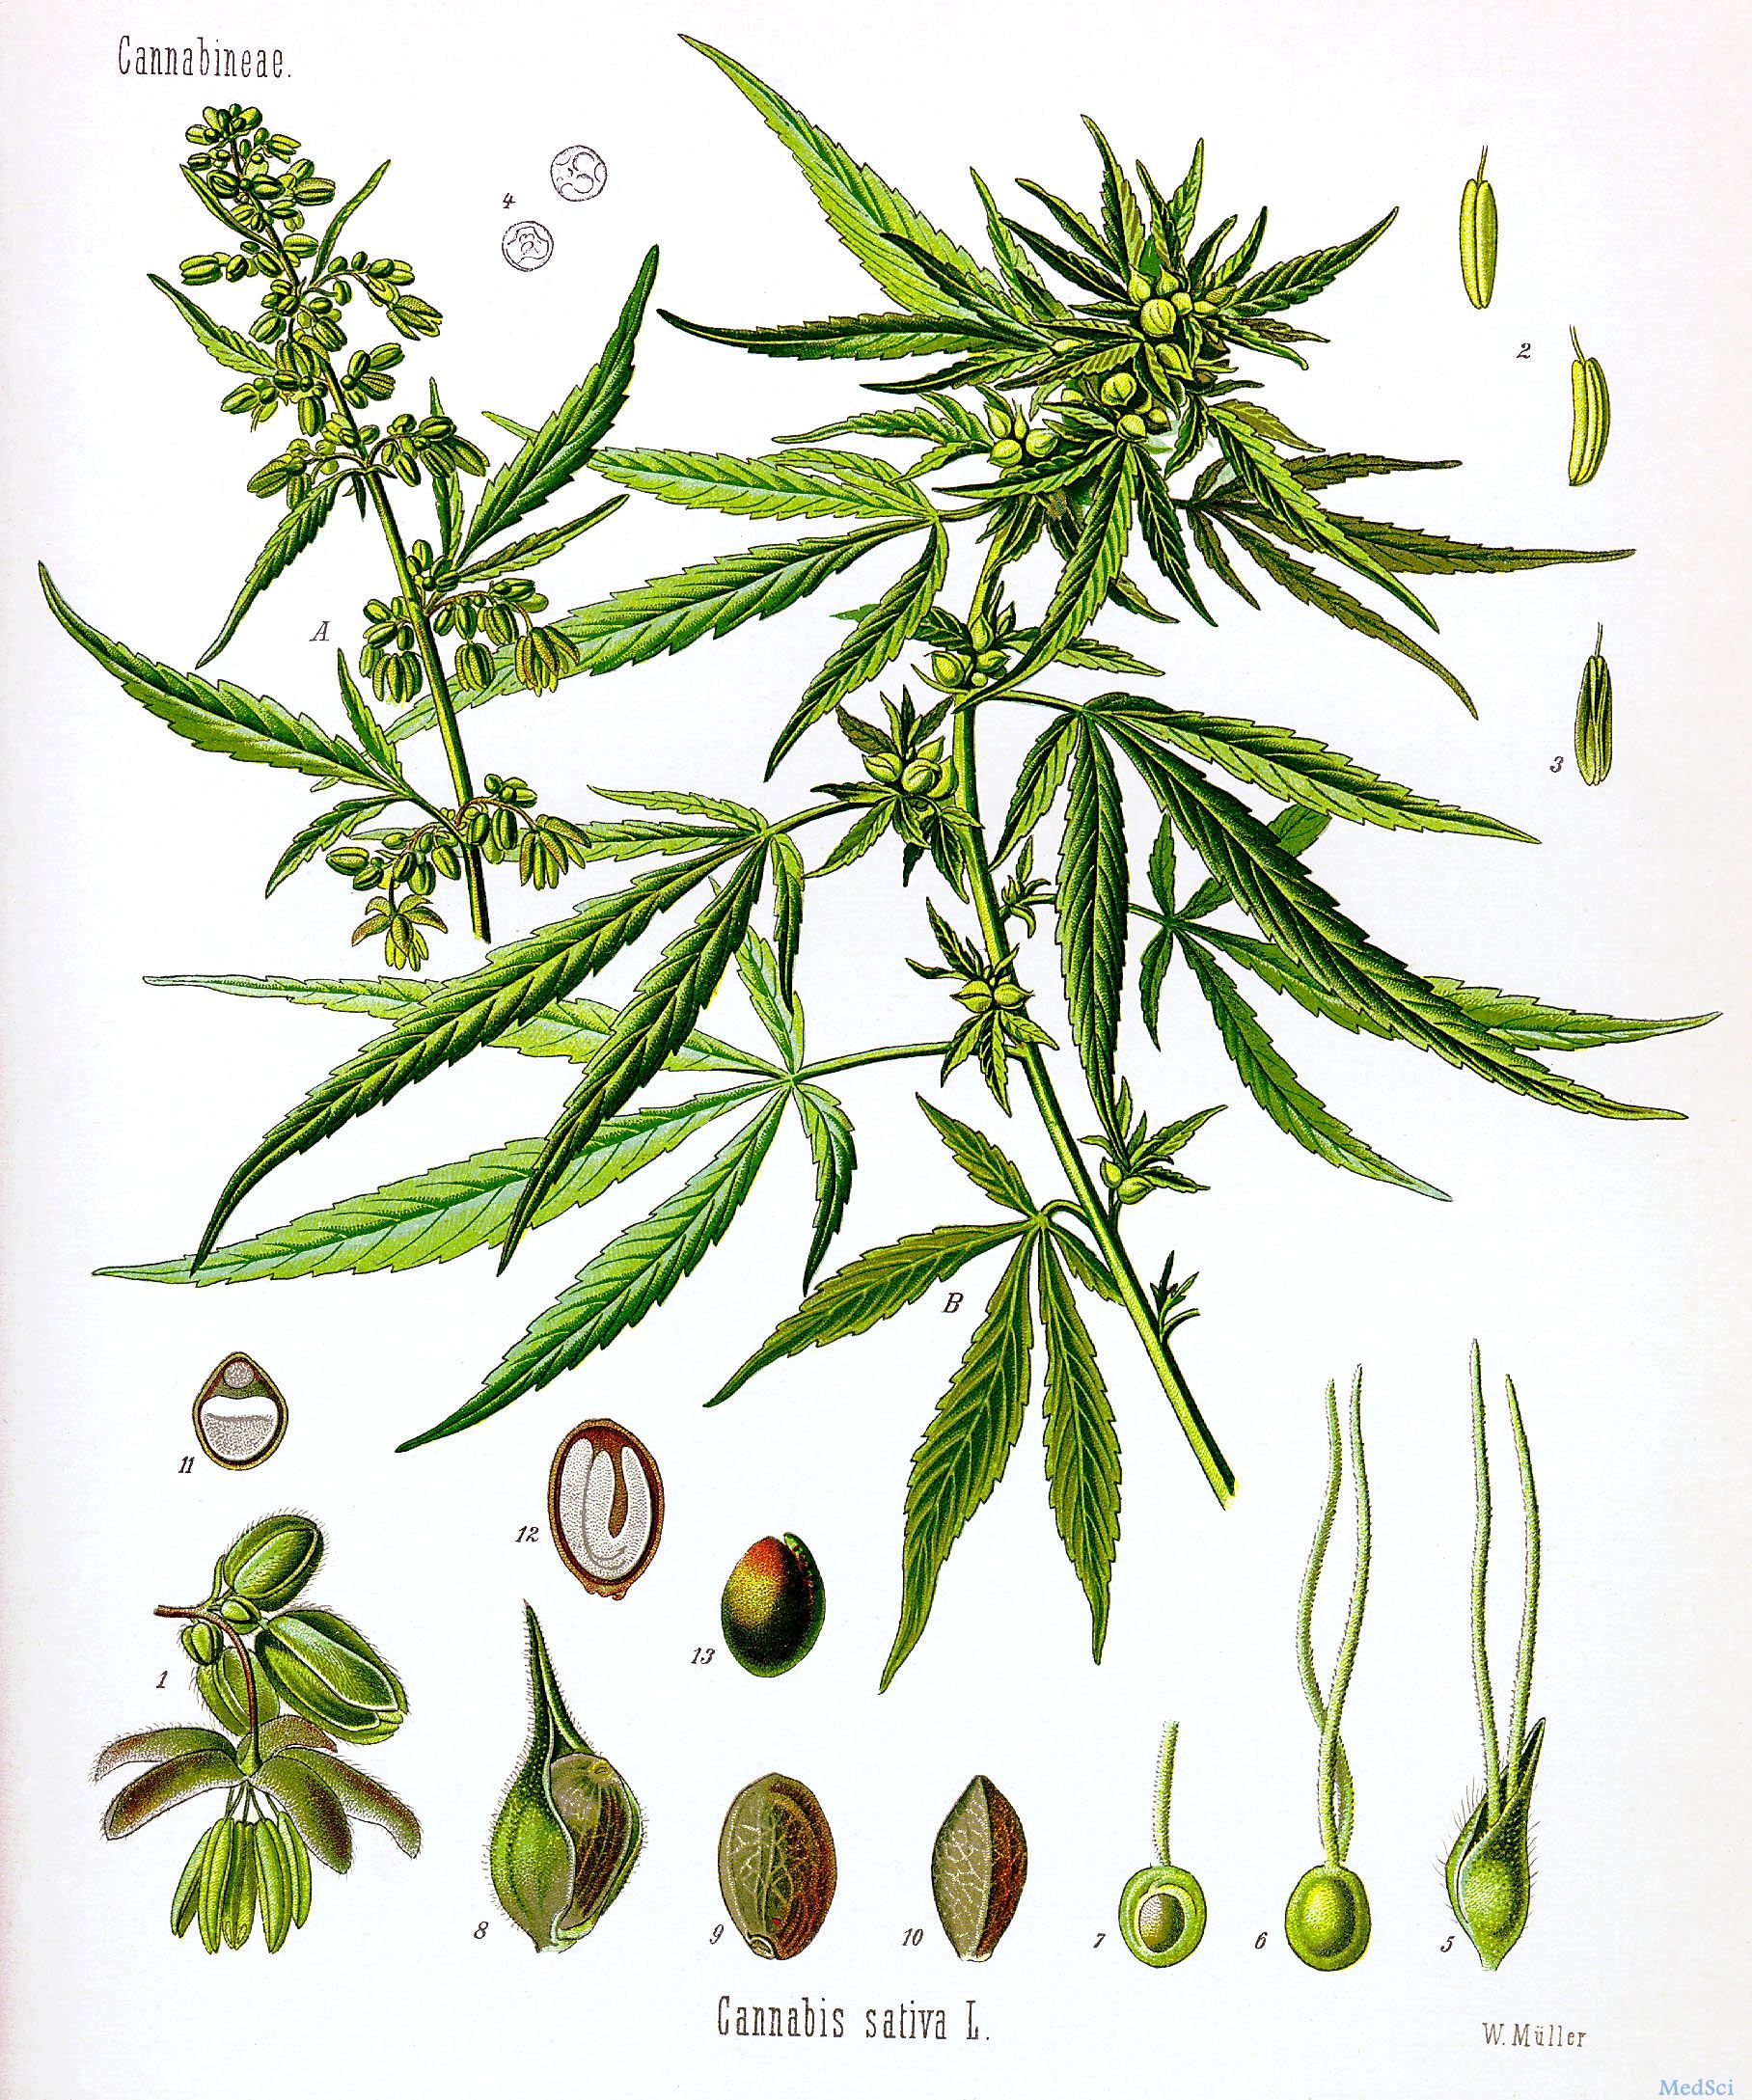 大麻有助于减少Lennox-Gastaut综合征的<font color="red">癫痫</font>发作